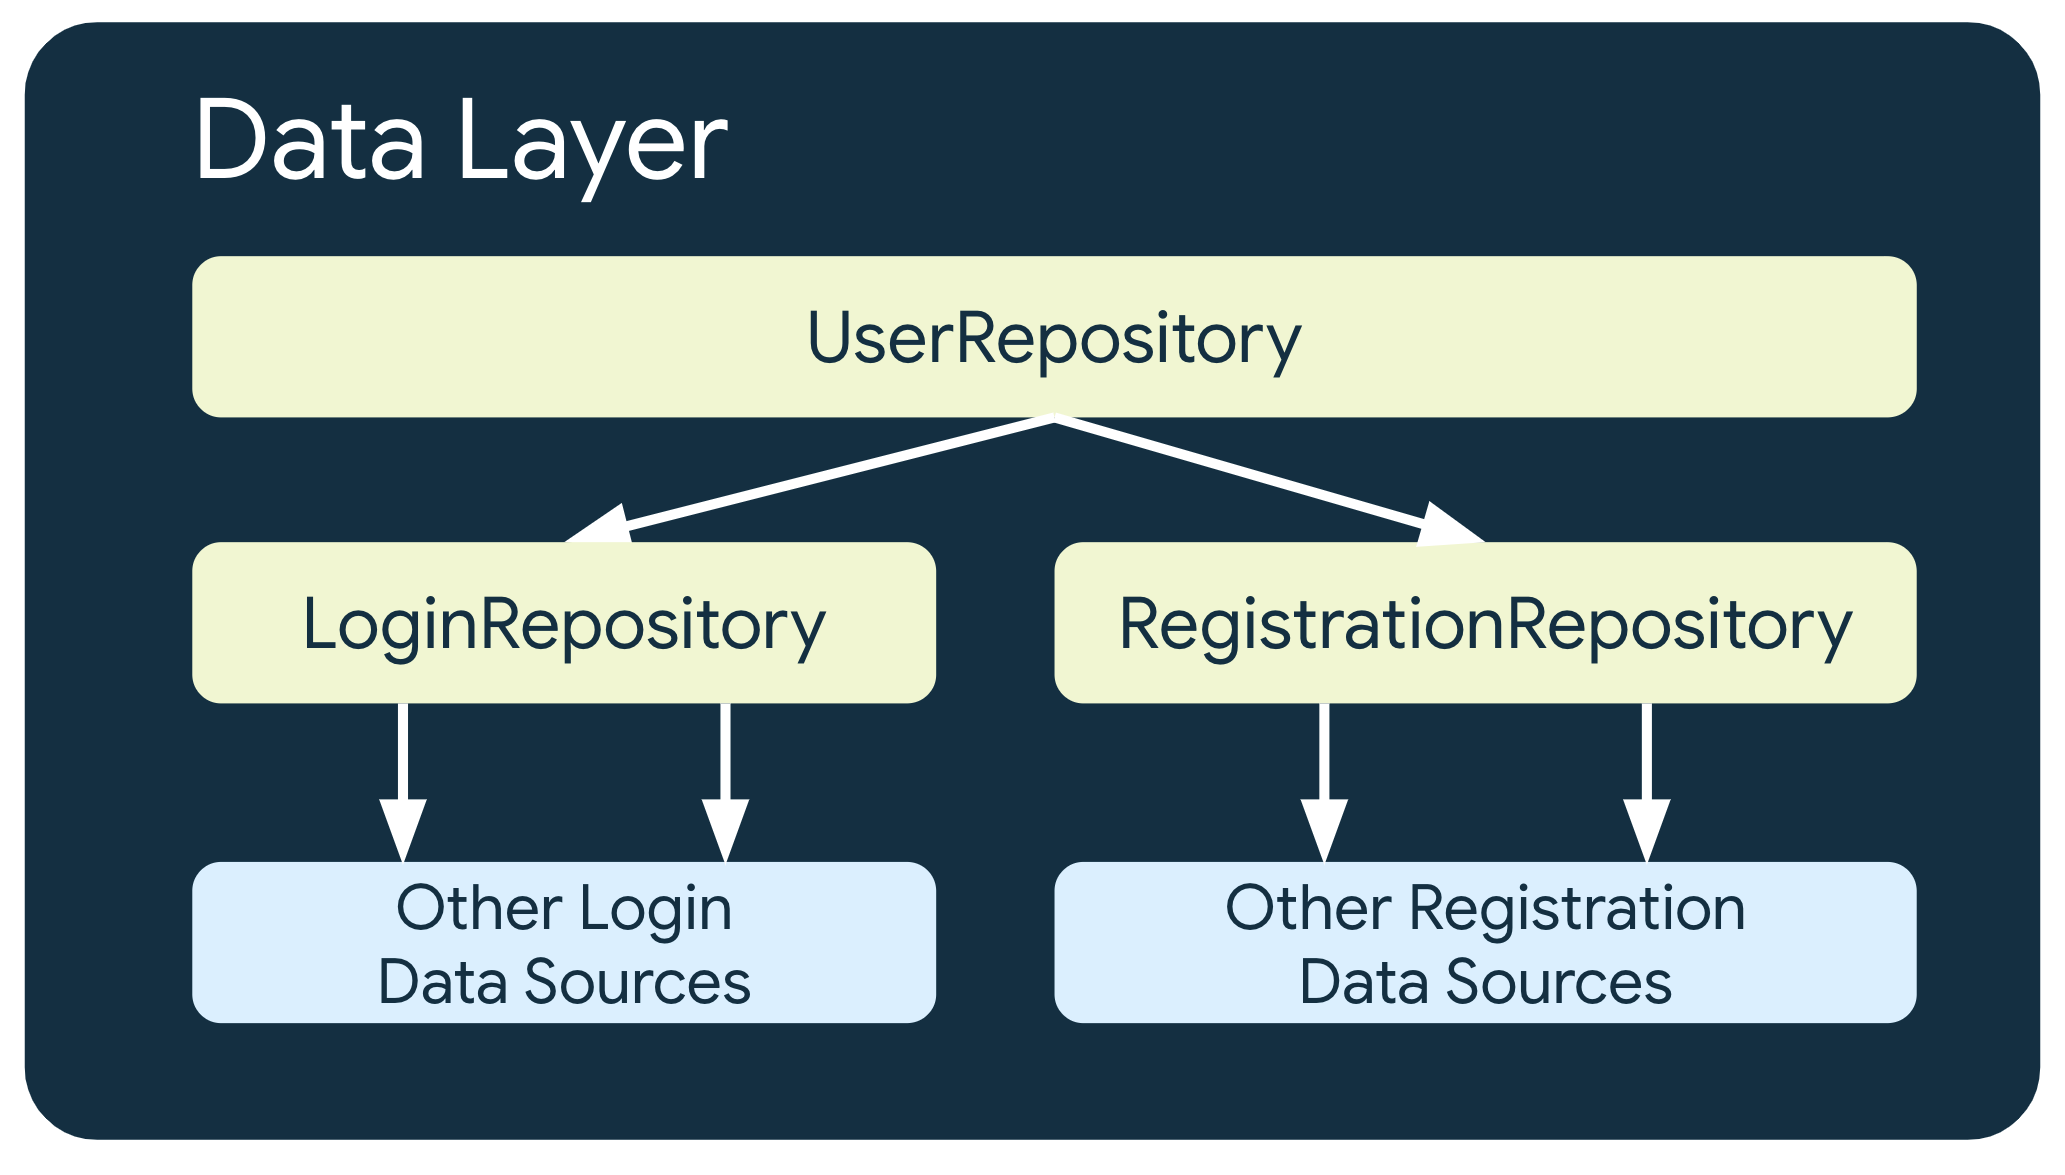 このサンプルでは、UserRepository が他の 2 つのリポジトリ クラス（他のログイン データソースに依存する LoginRepository と、他の登録データソースに依存する RegistrationRepository）に依存しています。